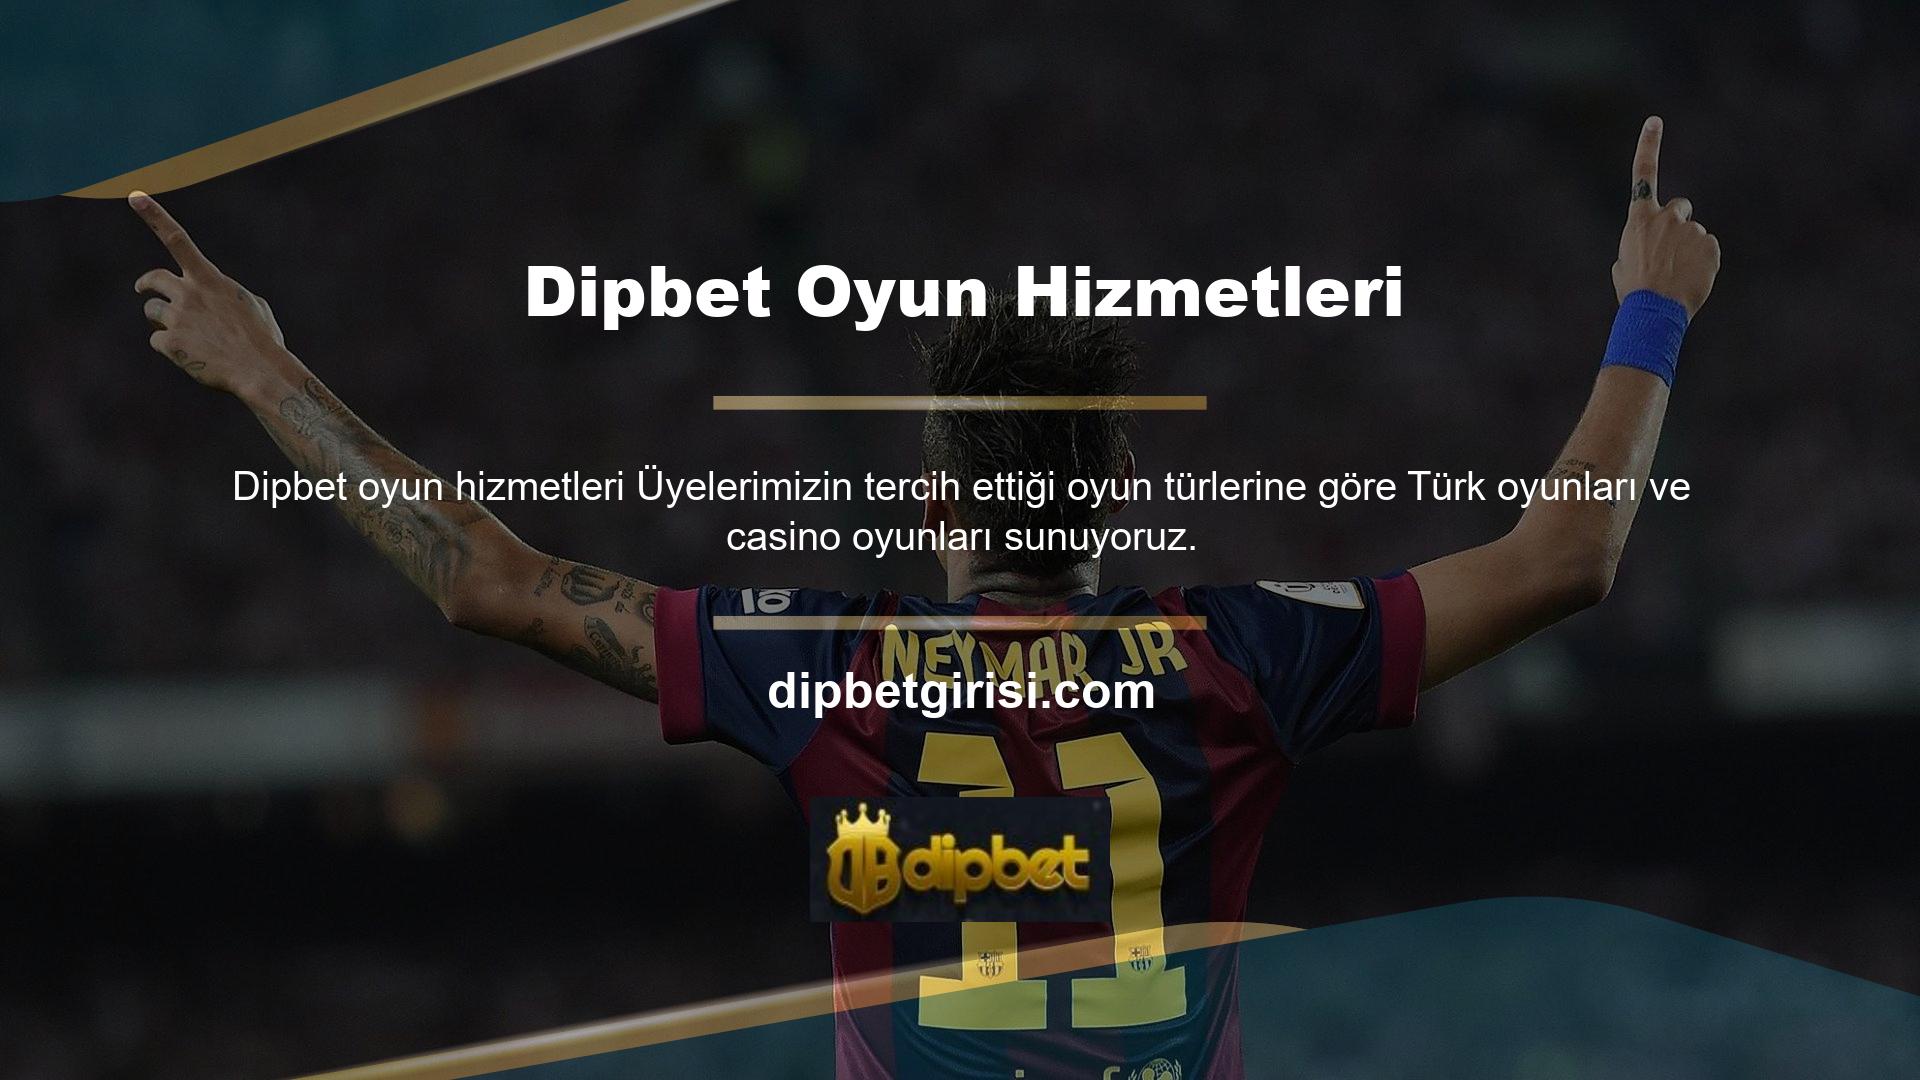 Online pazarda Türkiye Dipbet Ligi dışında Türkçe için alternatif bir dili olmayan birçok oyun sitesi bulunmaktadır